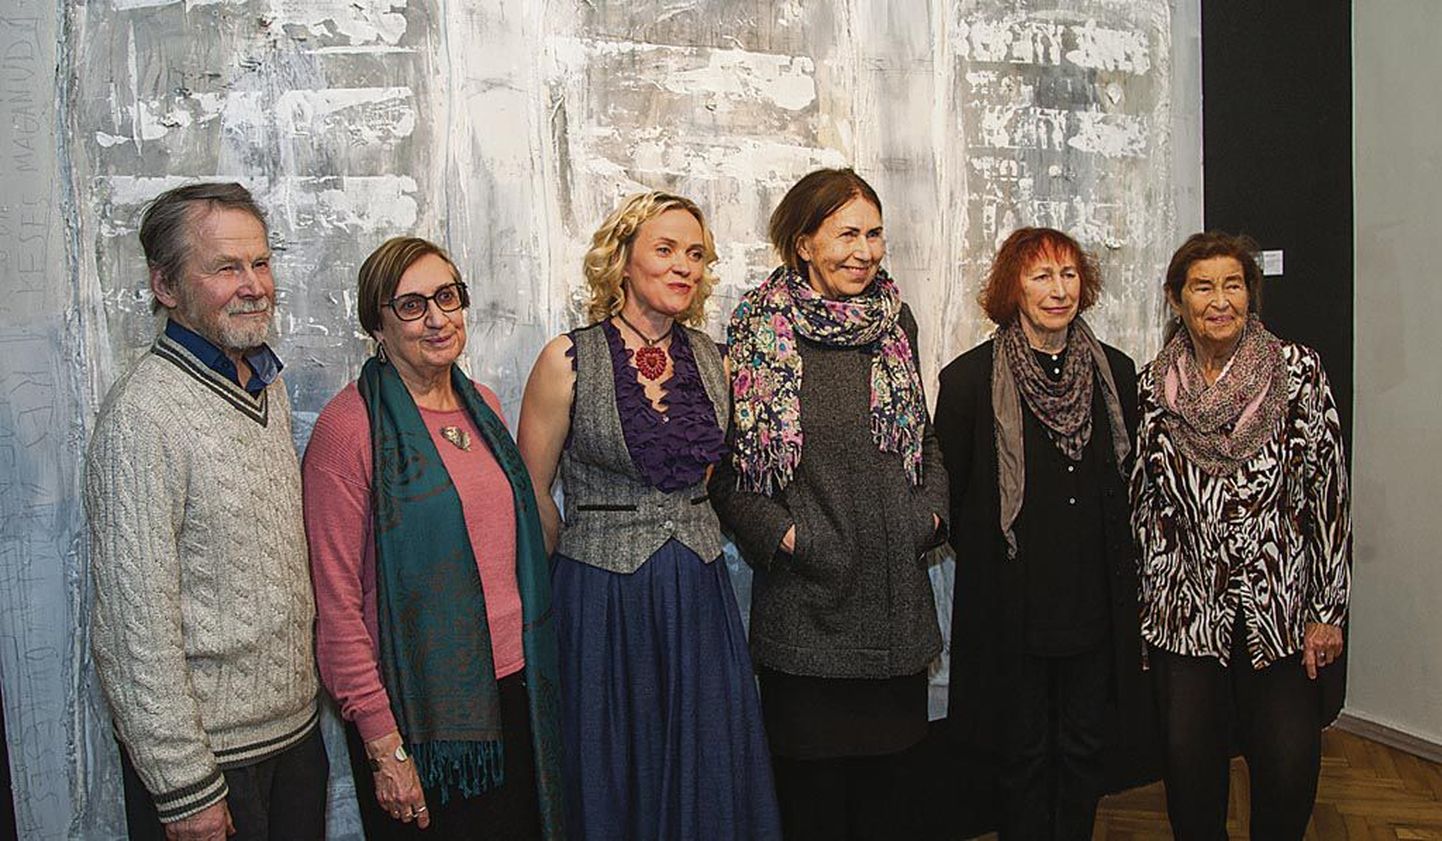 Kunstnikud poseerivad näituse “3 ainus” avamisel Jaan Elkeni maali ees. Kuraator Eveli Varik on vasakult kolmas.